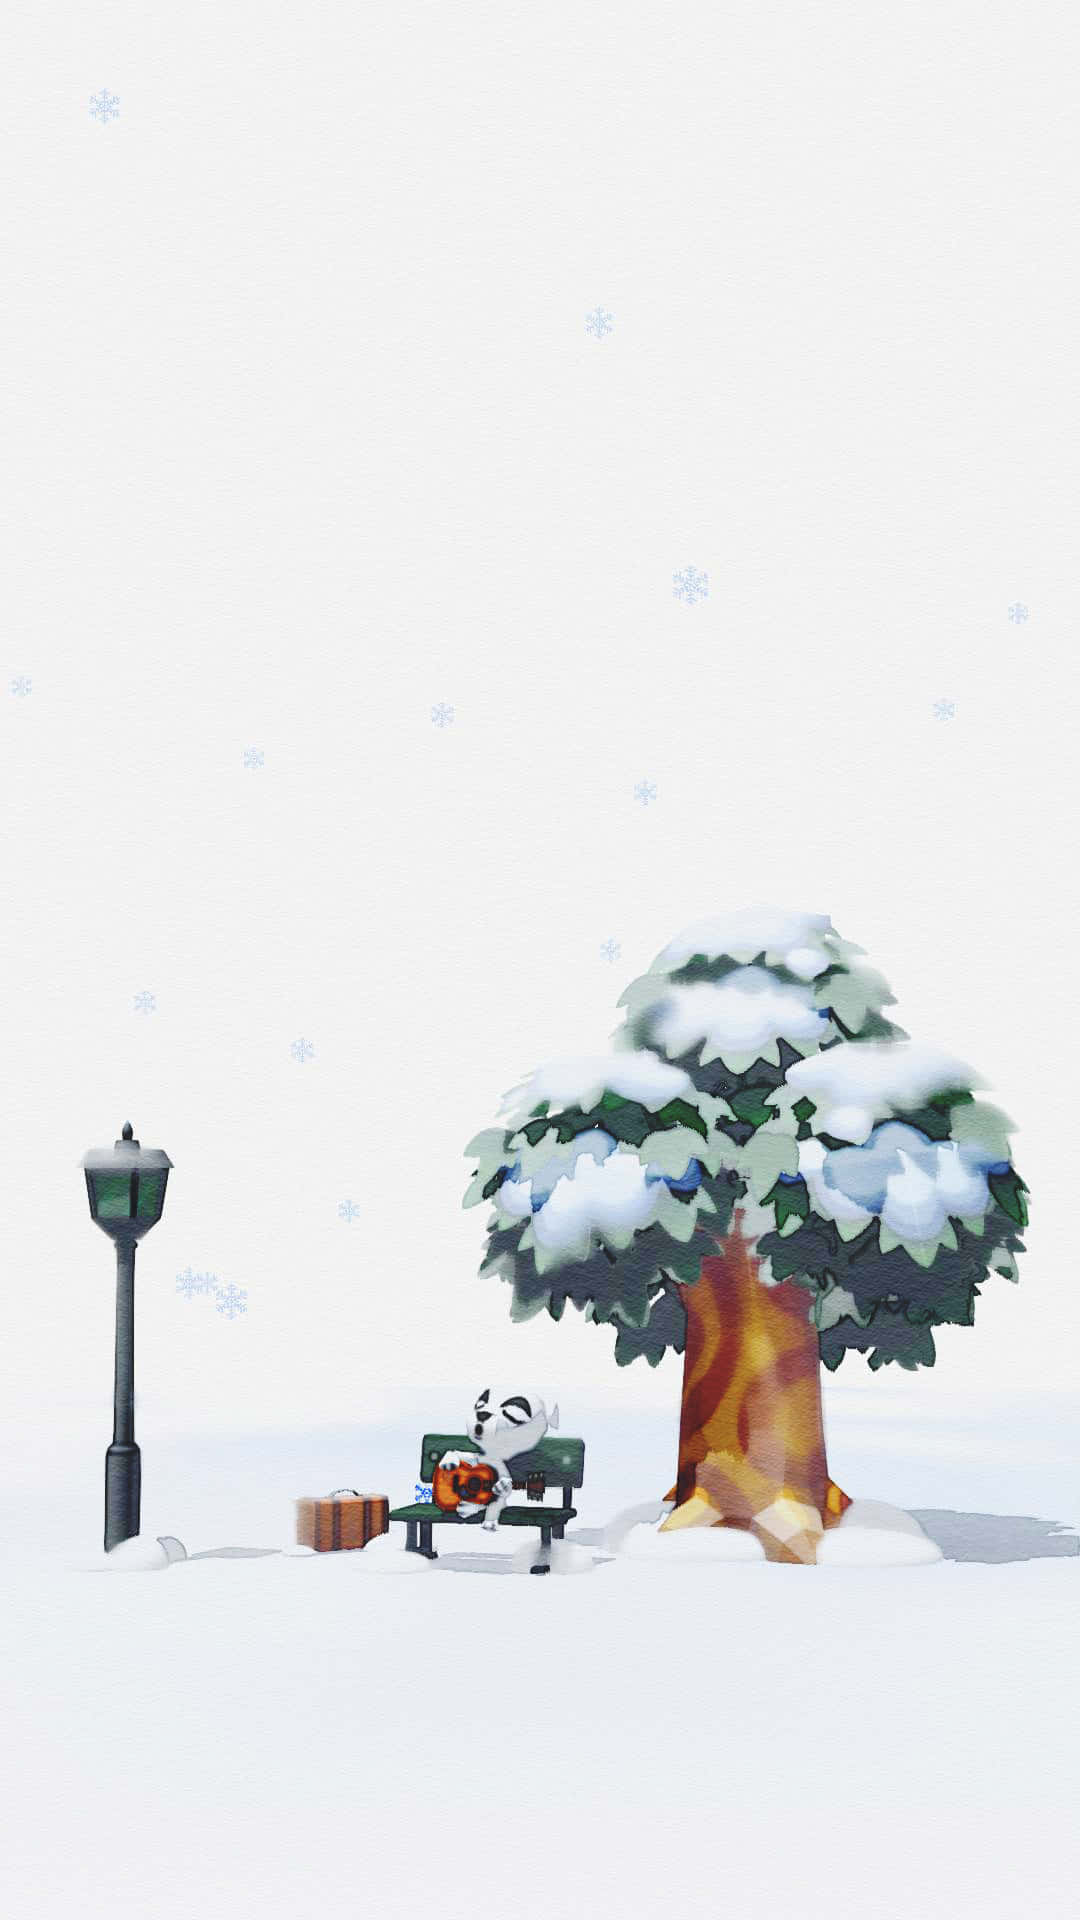 'erlebedie Magie Von Animal Crossing Im Winter' Wallpaper